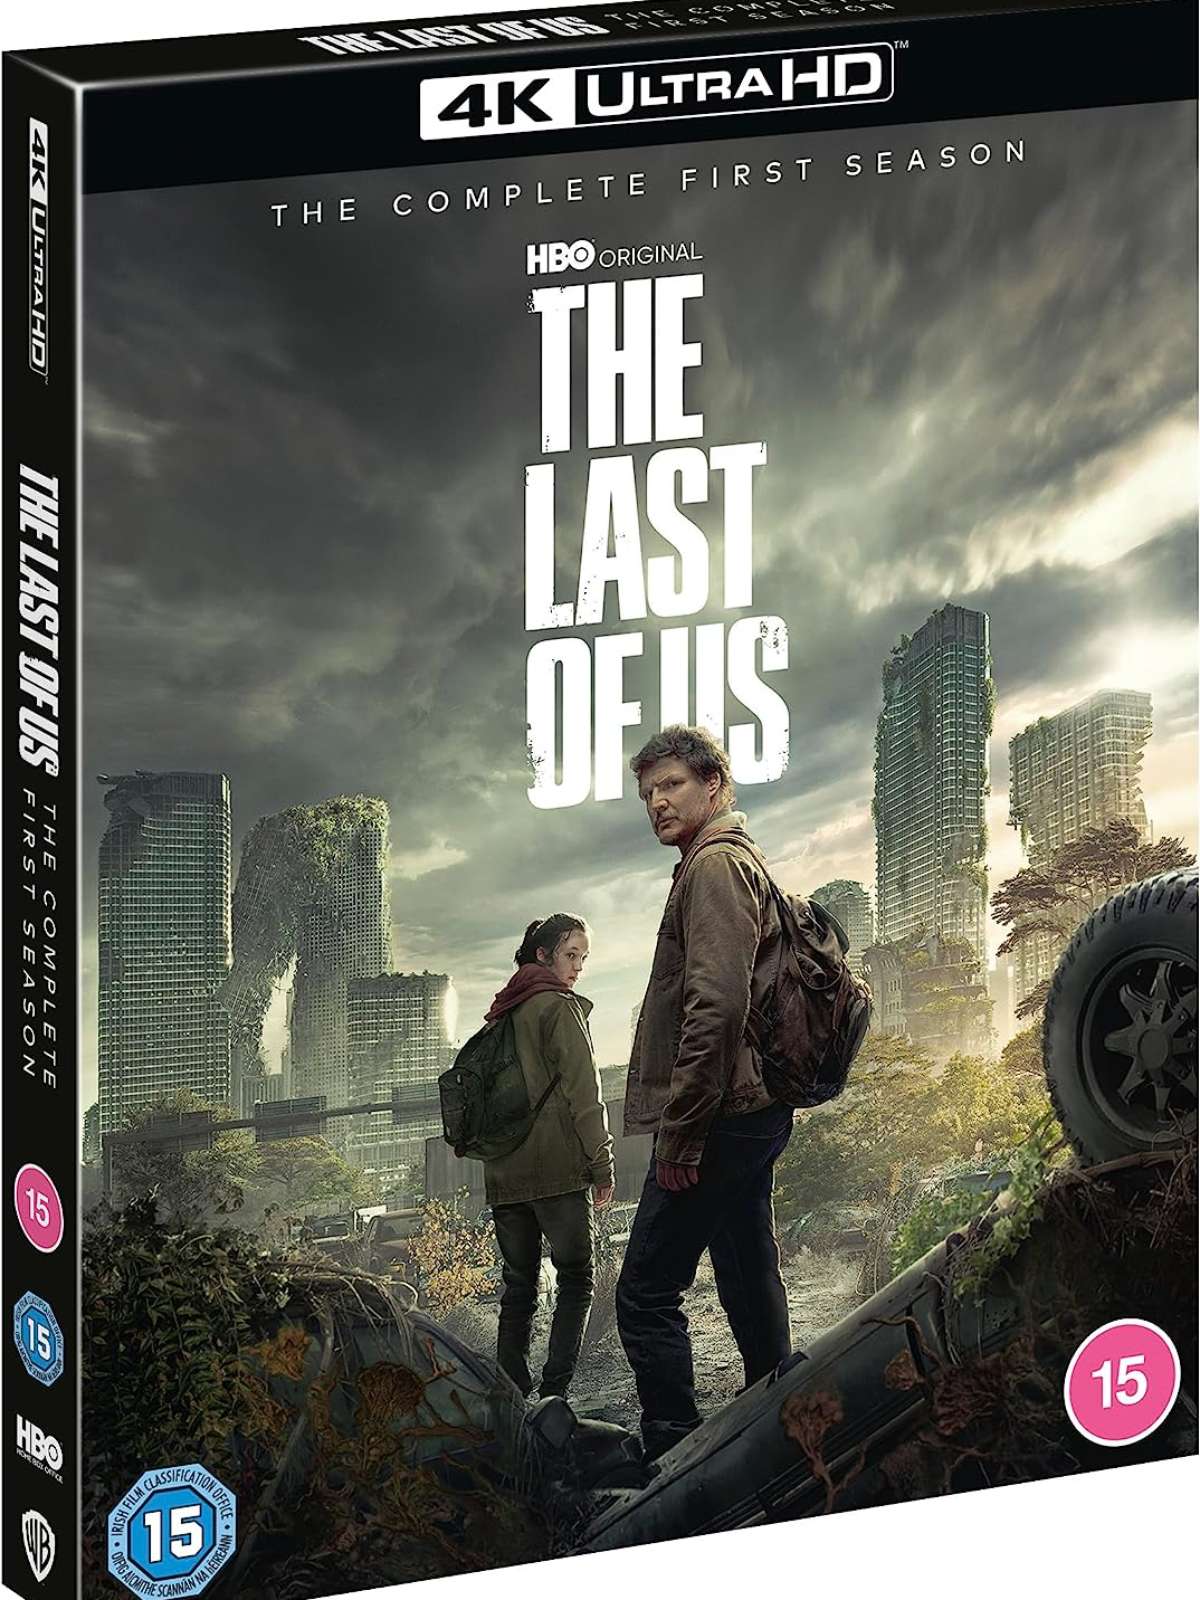 Análise: “The Last of Us“, da HBO, prova que ainda há espaço para drama de  apocalipse zumbi